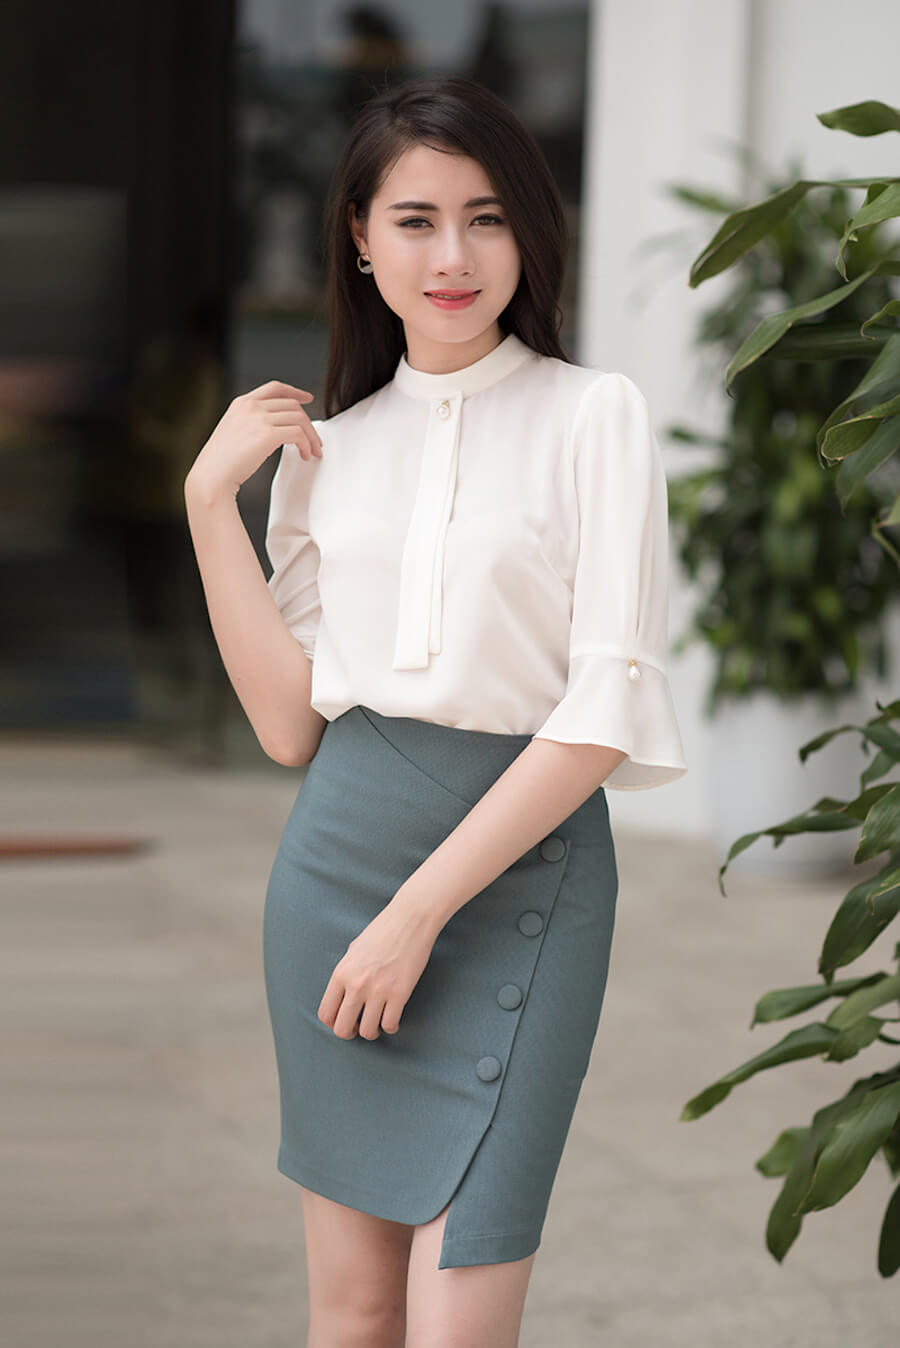 Elimaz - Thời Trang Công Sở - Shopee Mall Online | Shopee Việt Nam